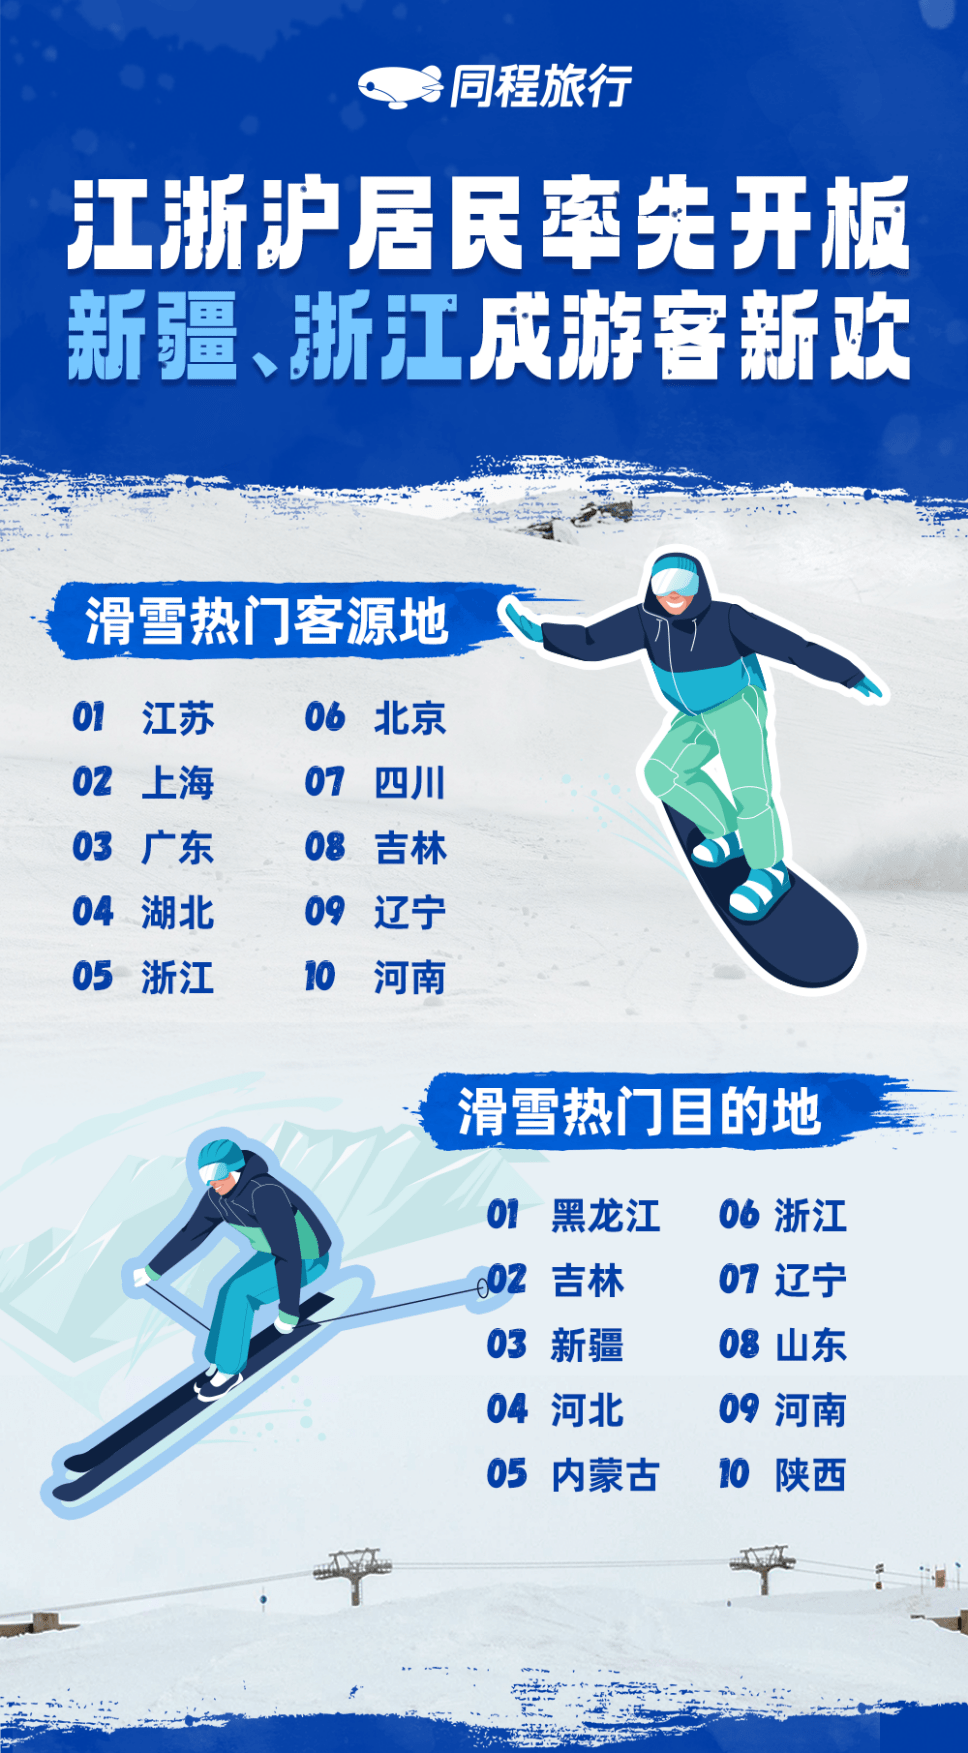 同程旅行：滑雪旅游热度上涨120%， 浙江滑雪热度涨幅超7倍